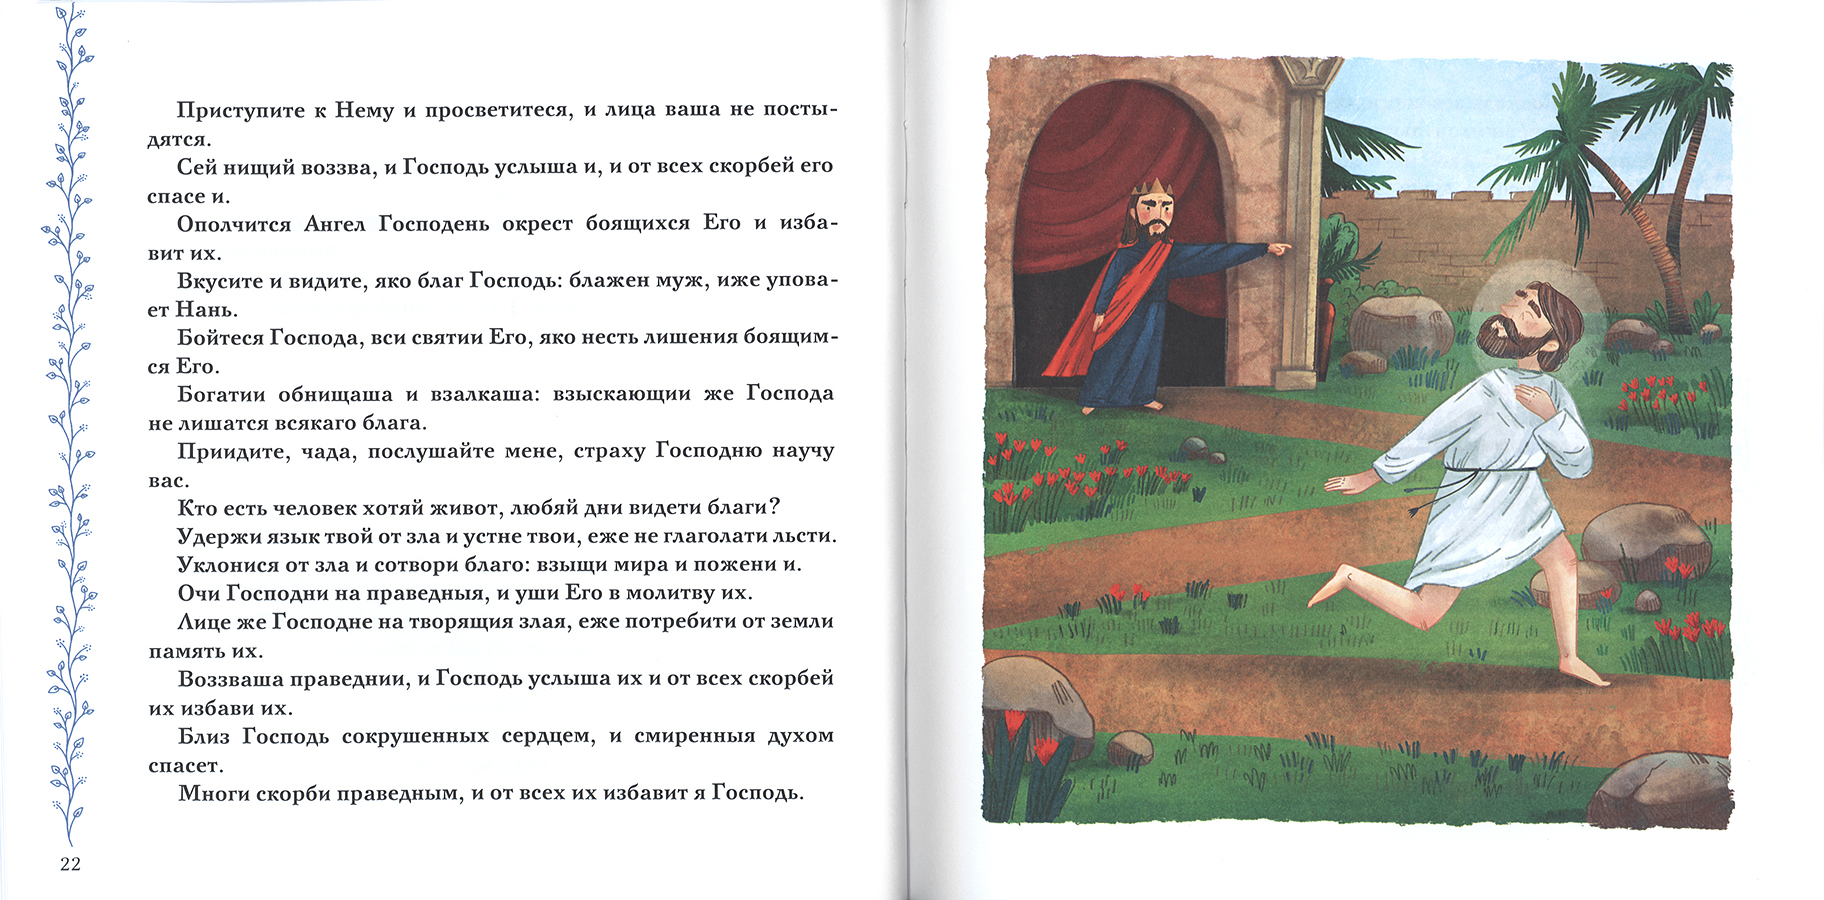 Есть ли псалом о даровании детей? - Православный журнал «Фома»